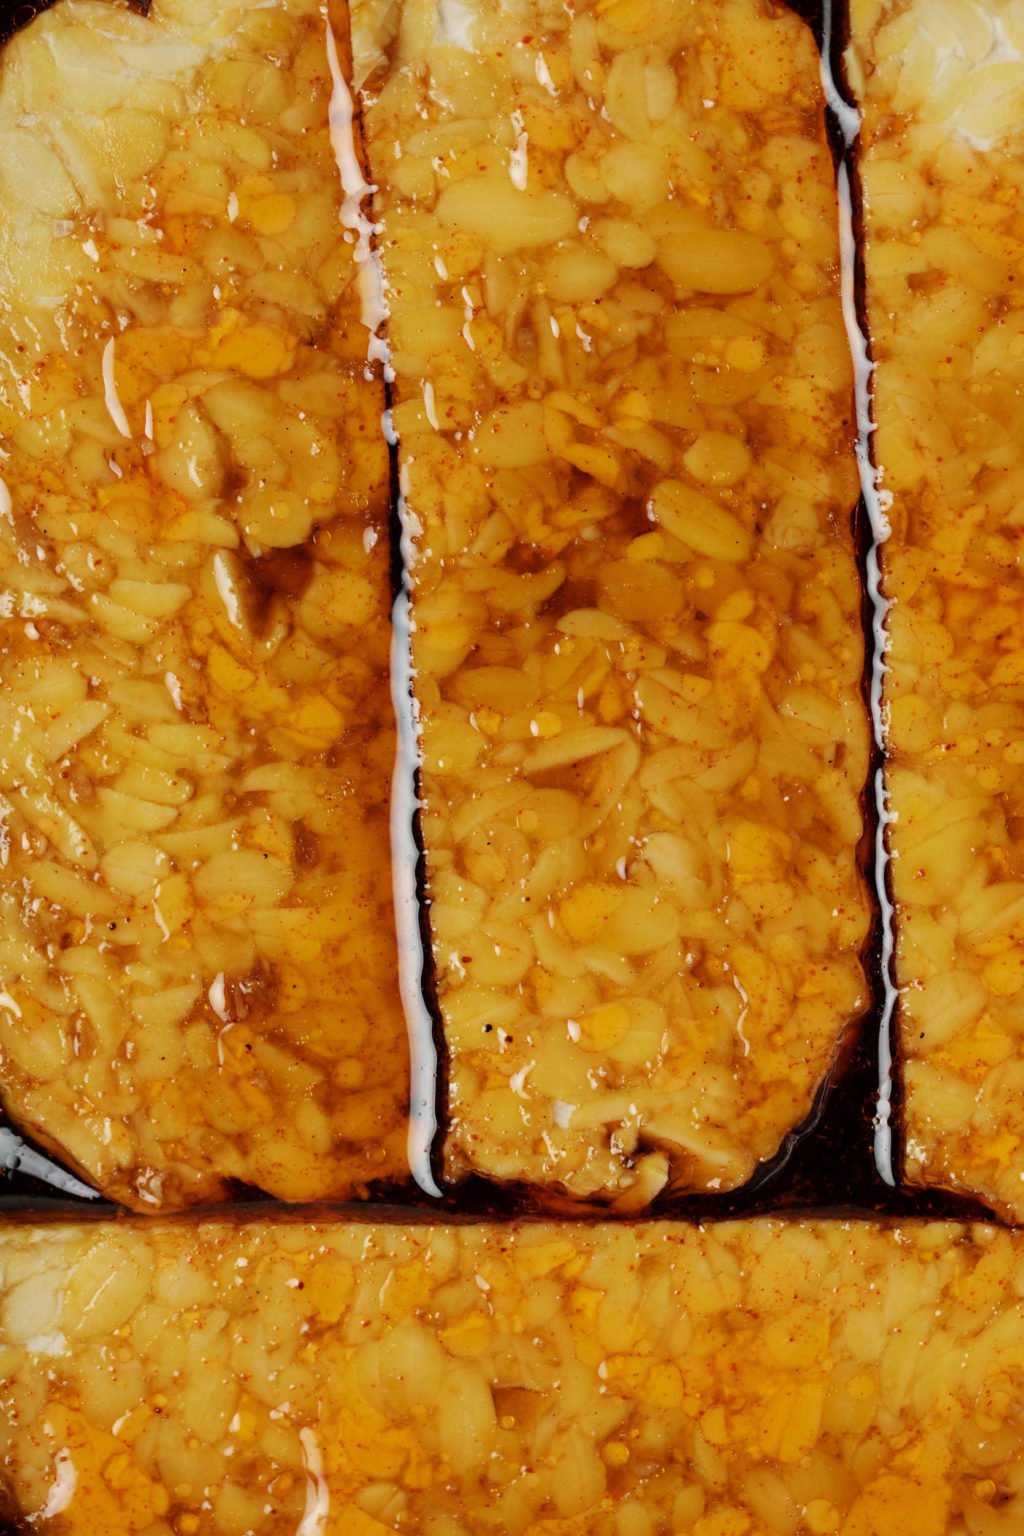 Gros plan d'une protéine végétale marinée dans une sauce de couleur ambre foncé.